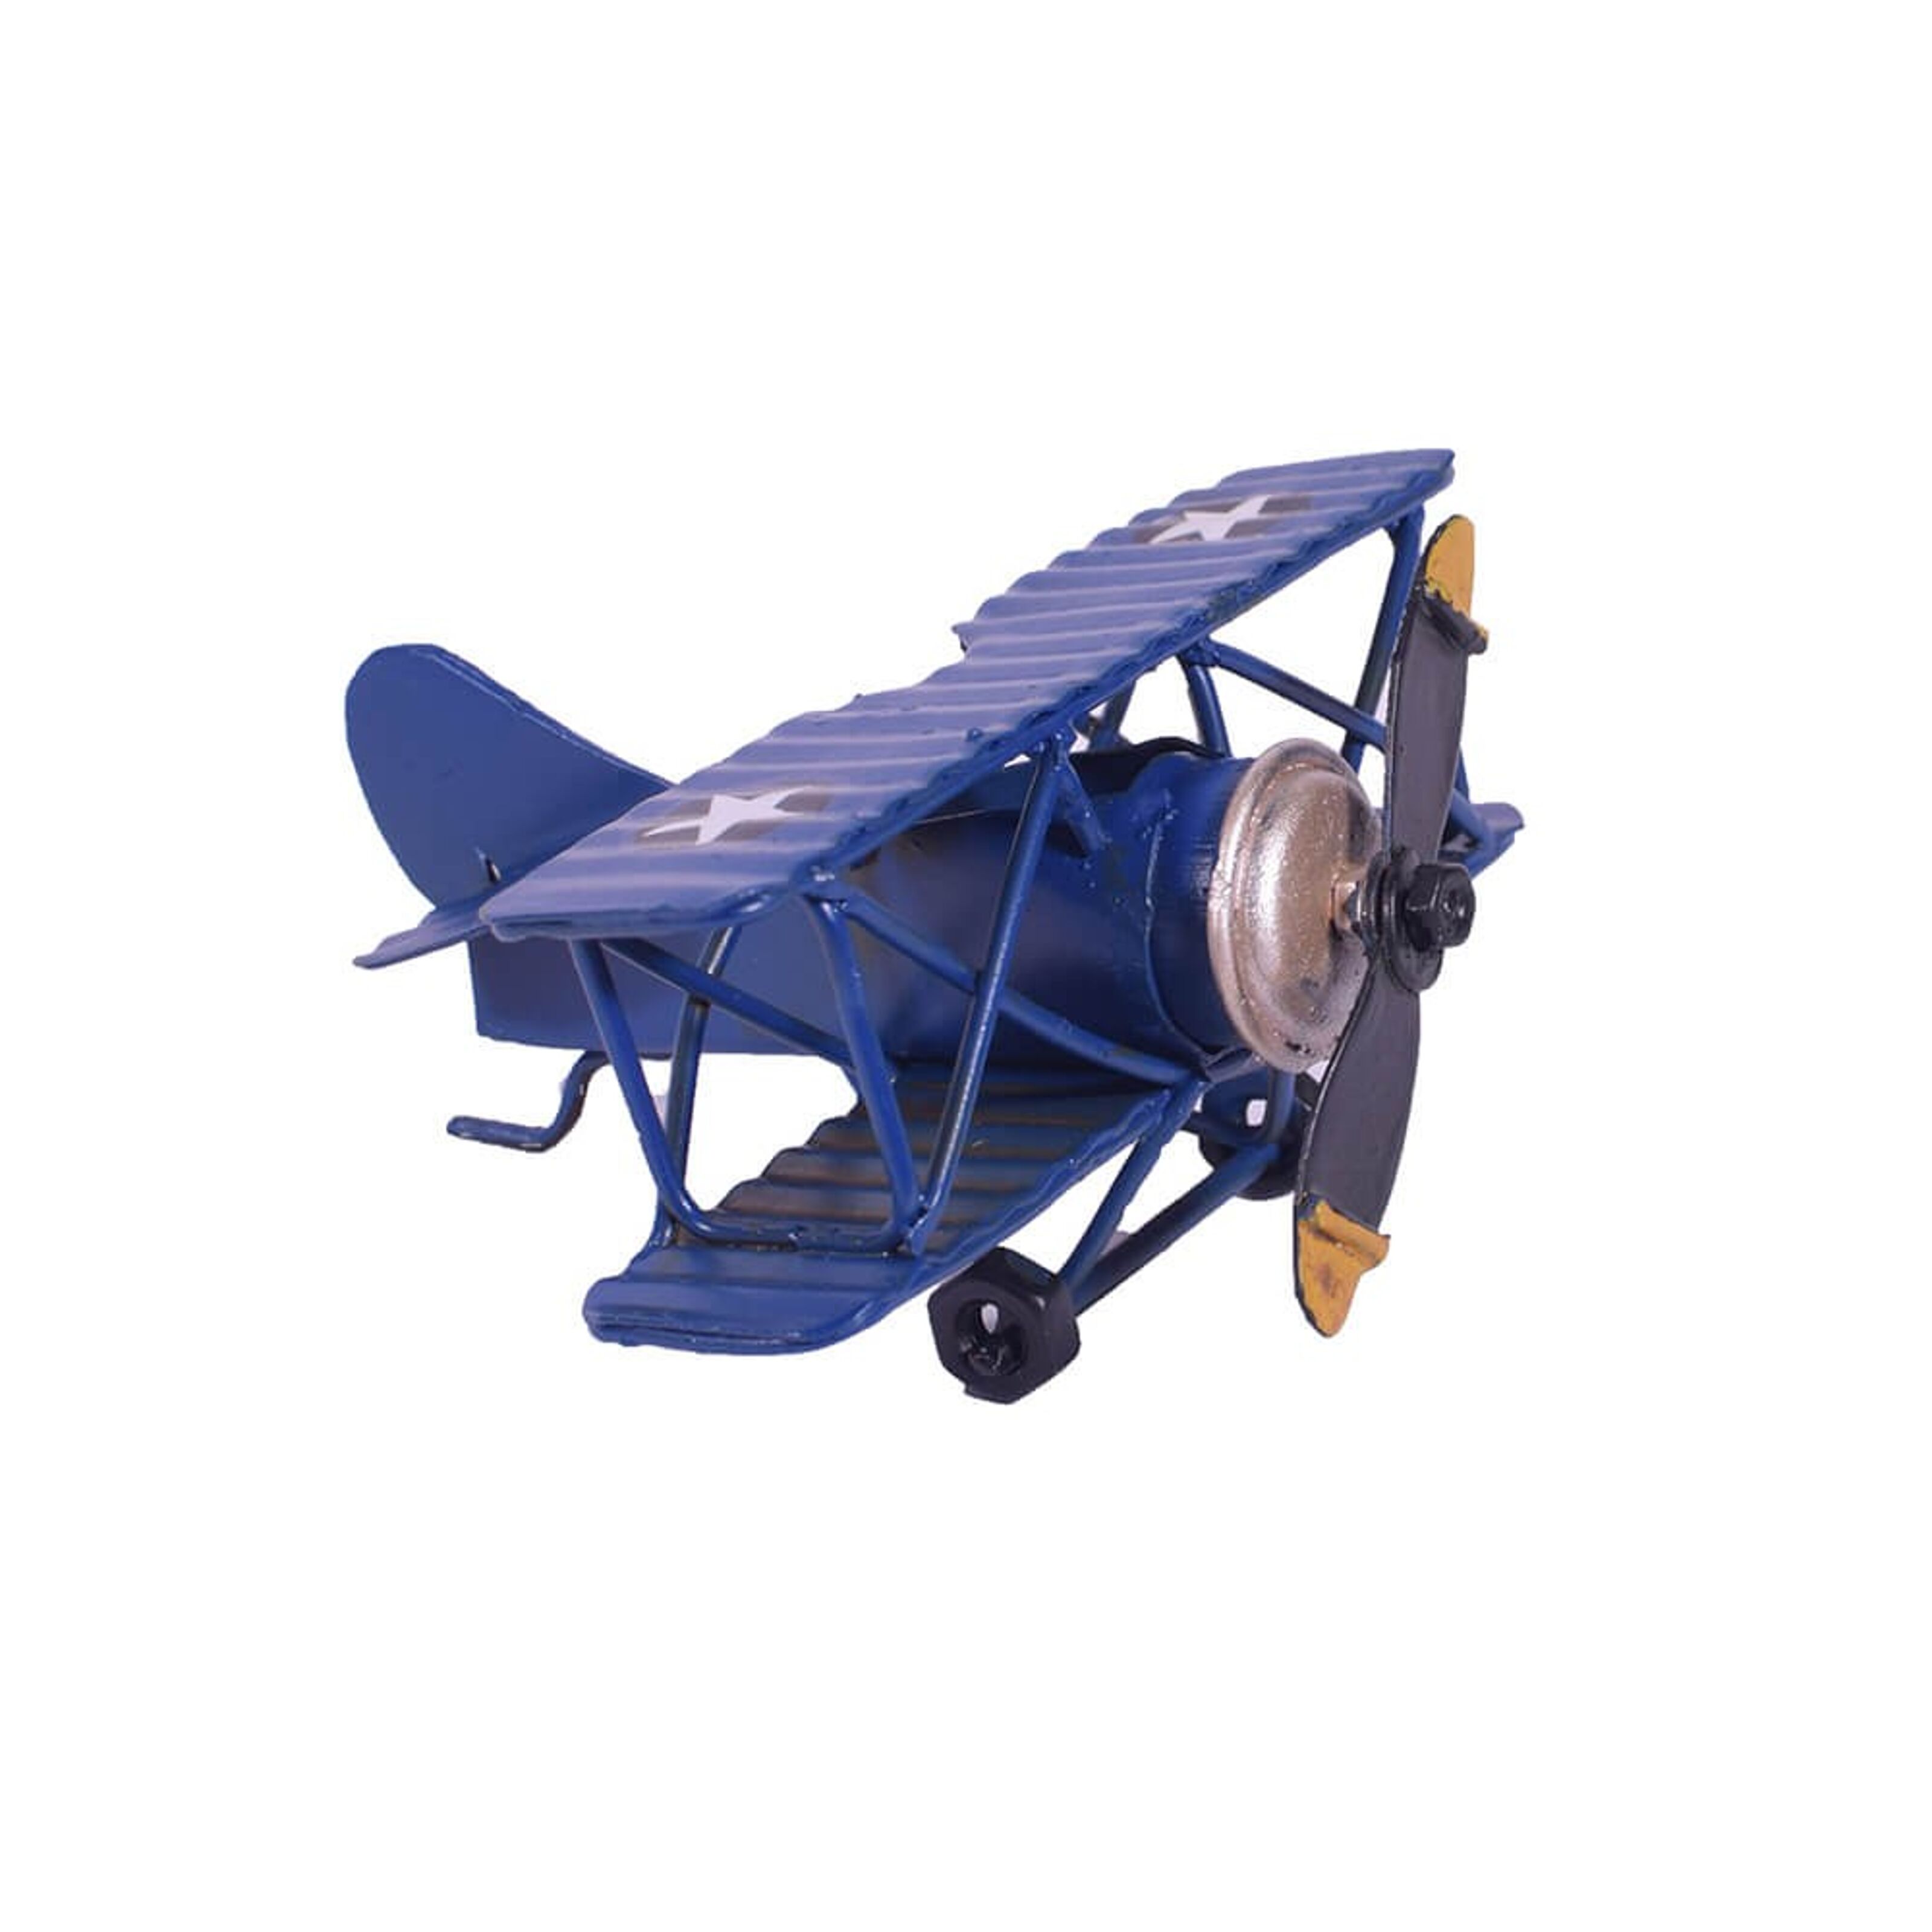 Achat Miniature d'avion en métal bleu en gros